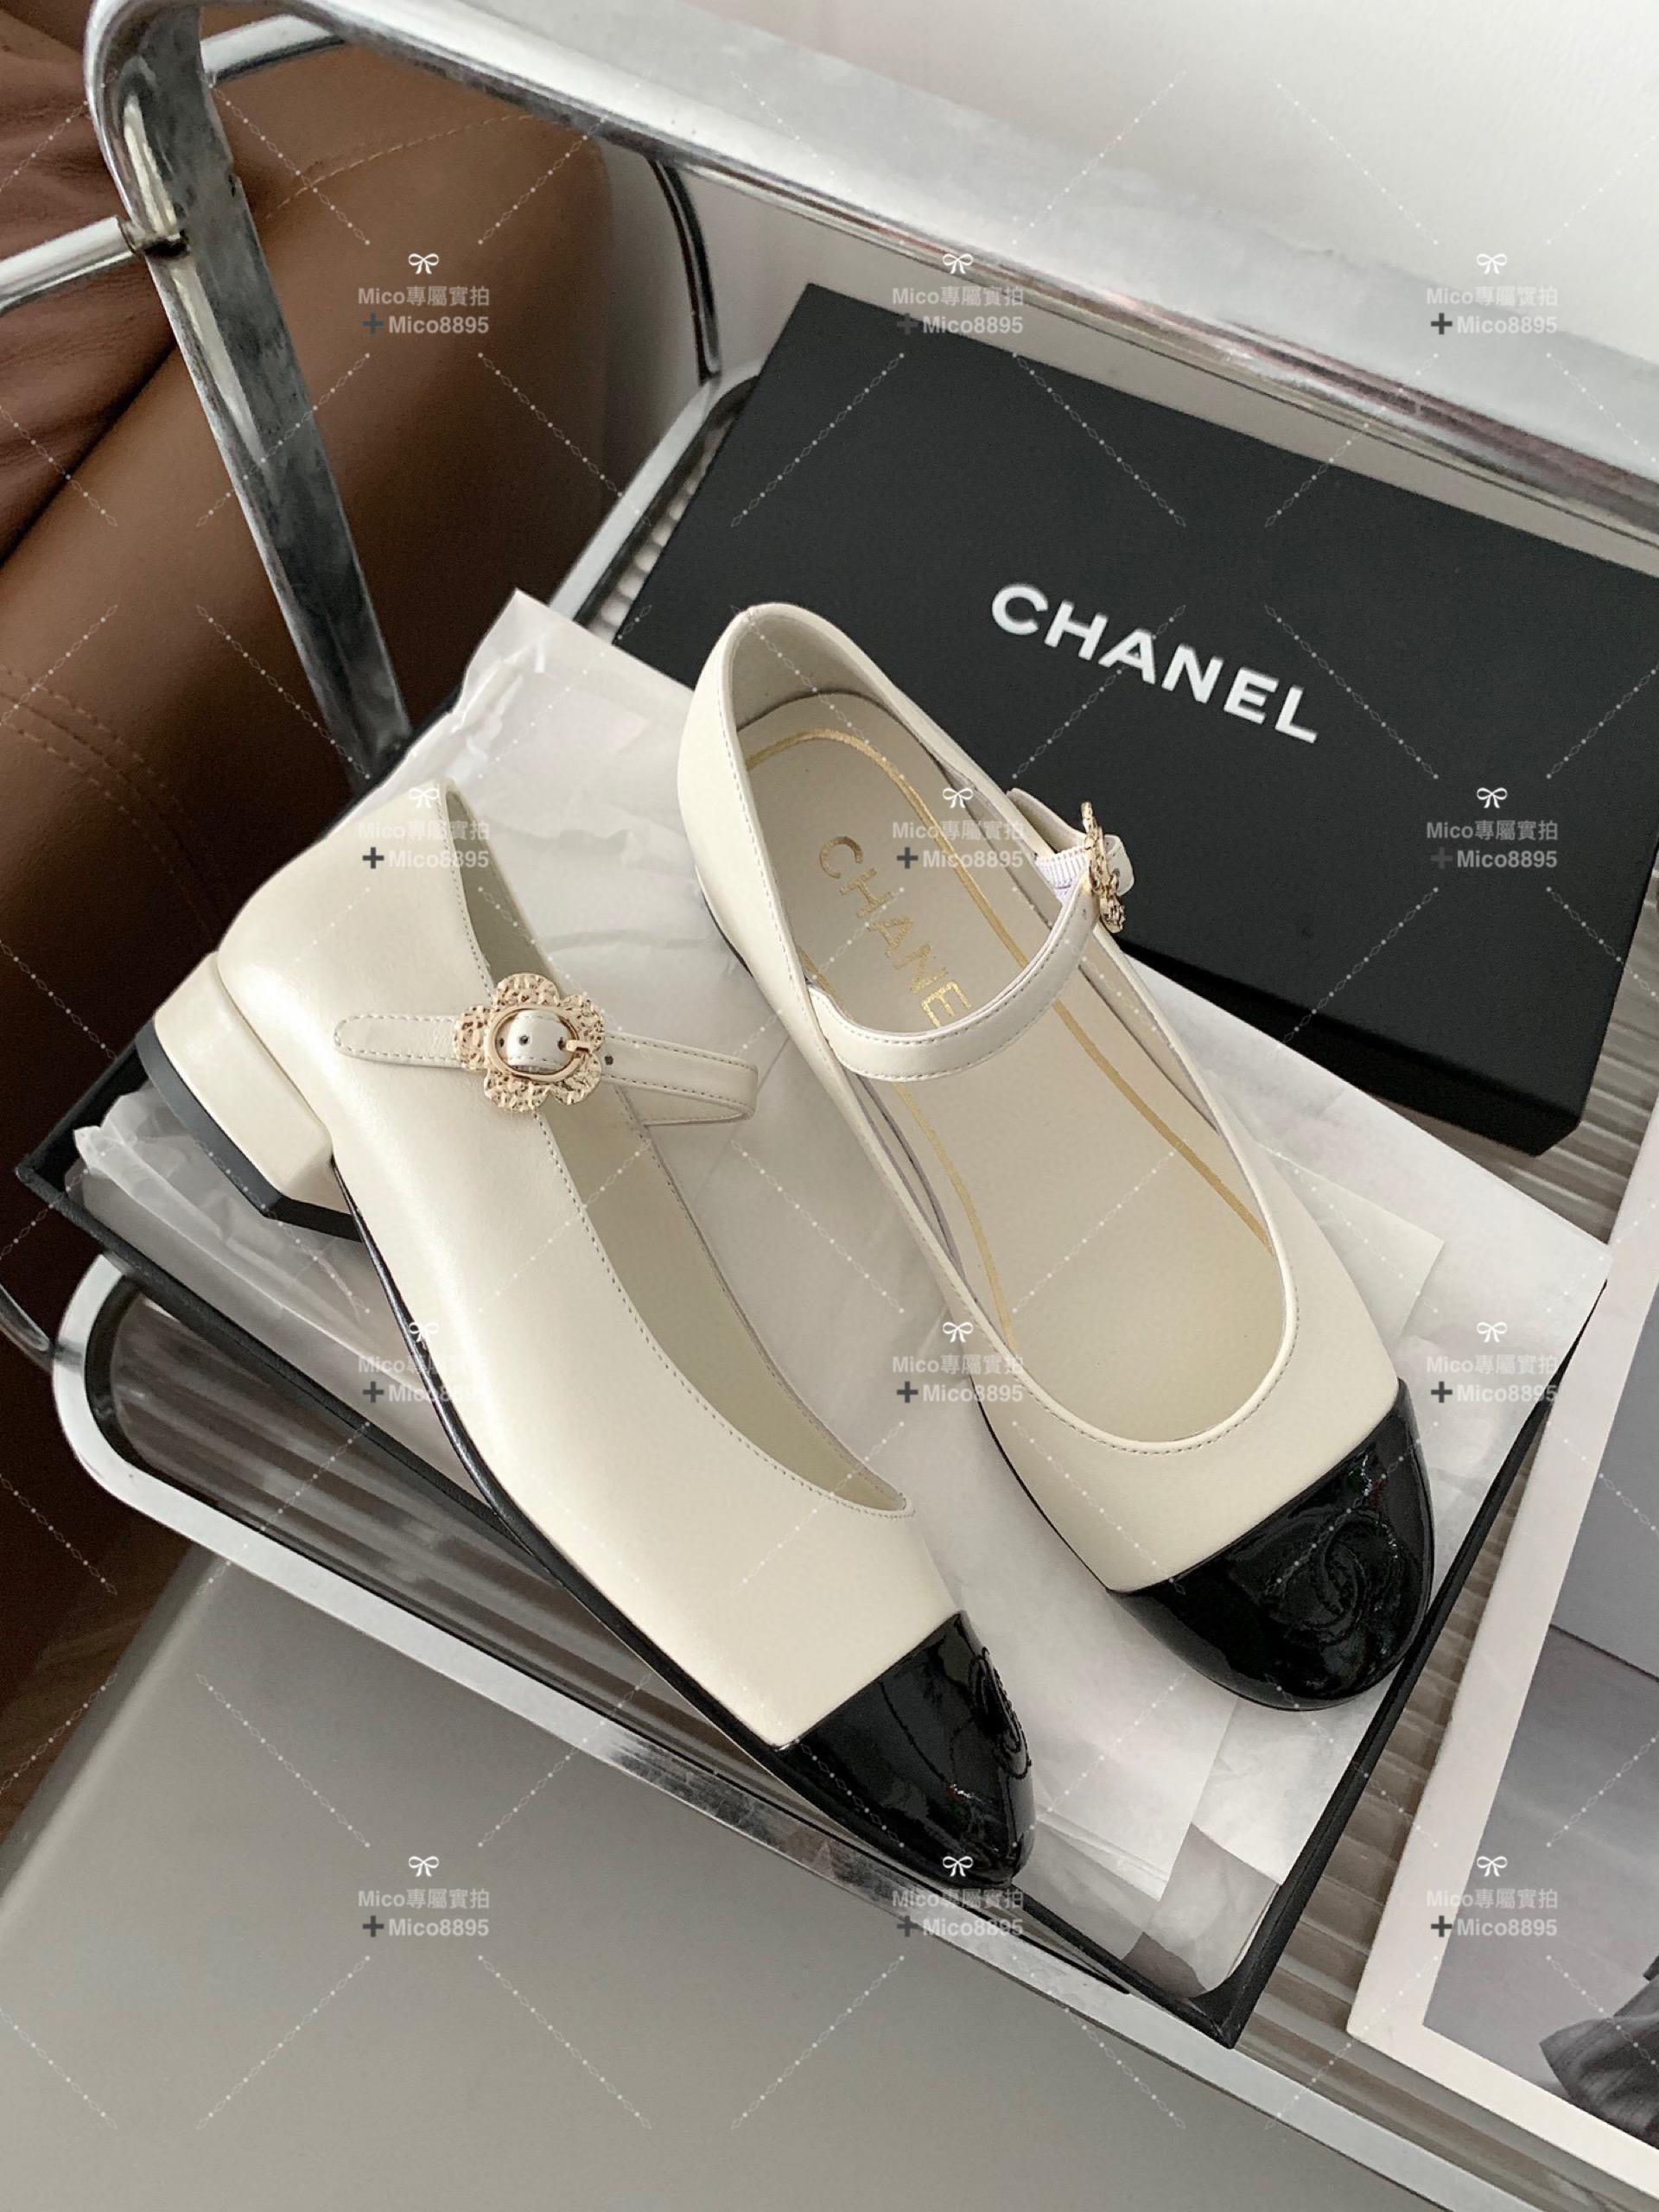 Chanel 白色小牛皮 側邊小花釦 瑪莉珍平底鞋 繫帶鞋 娃娃鞋